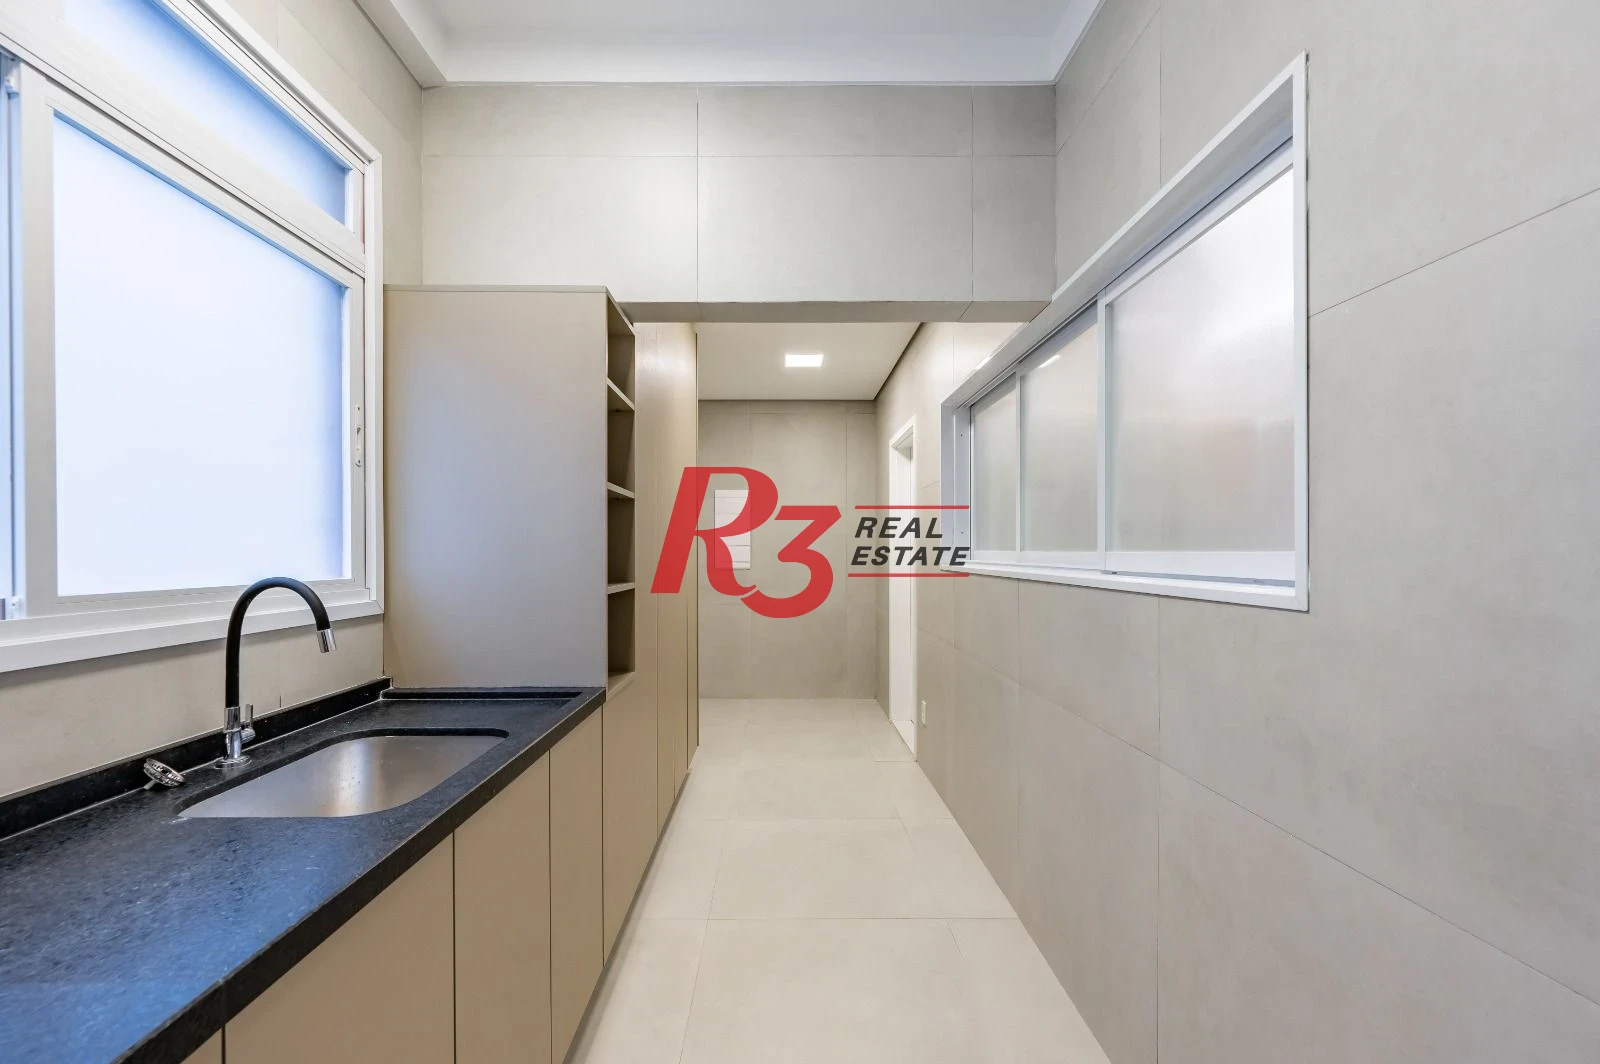 Apartamento com 3 dormitórios à venda, 150 m² por R$ 1.980.000,00 - Gonzaga - Santos/SP